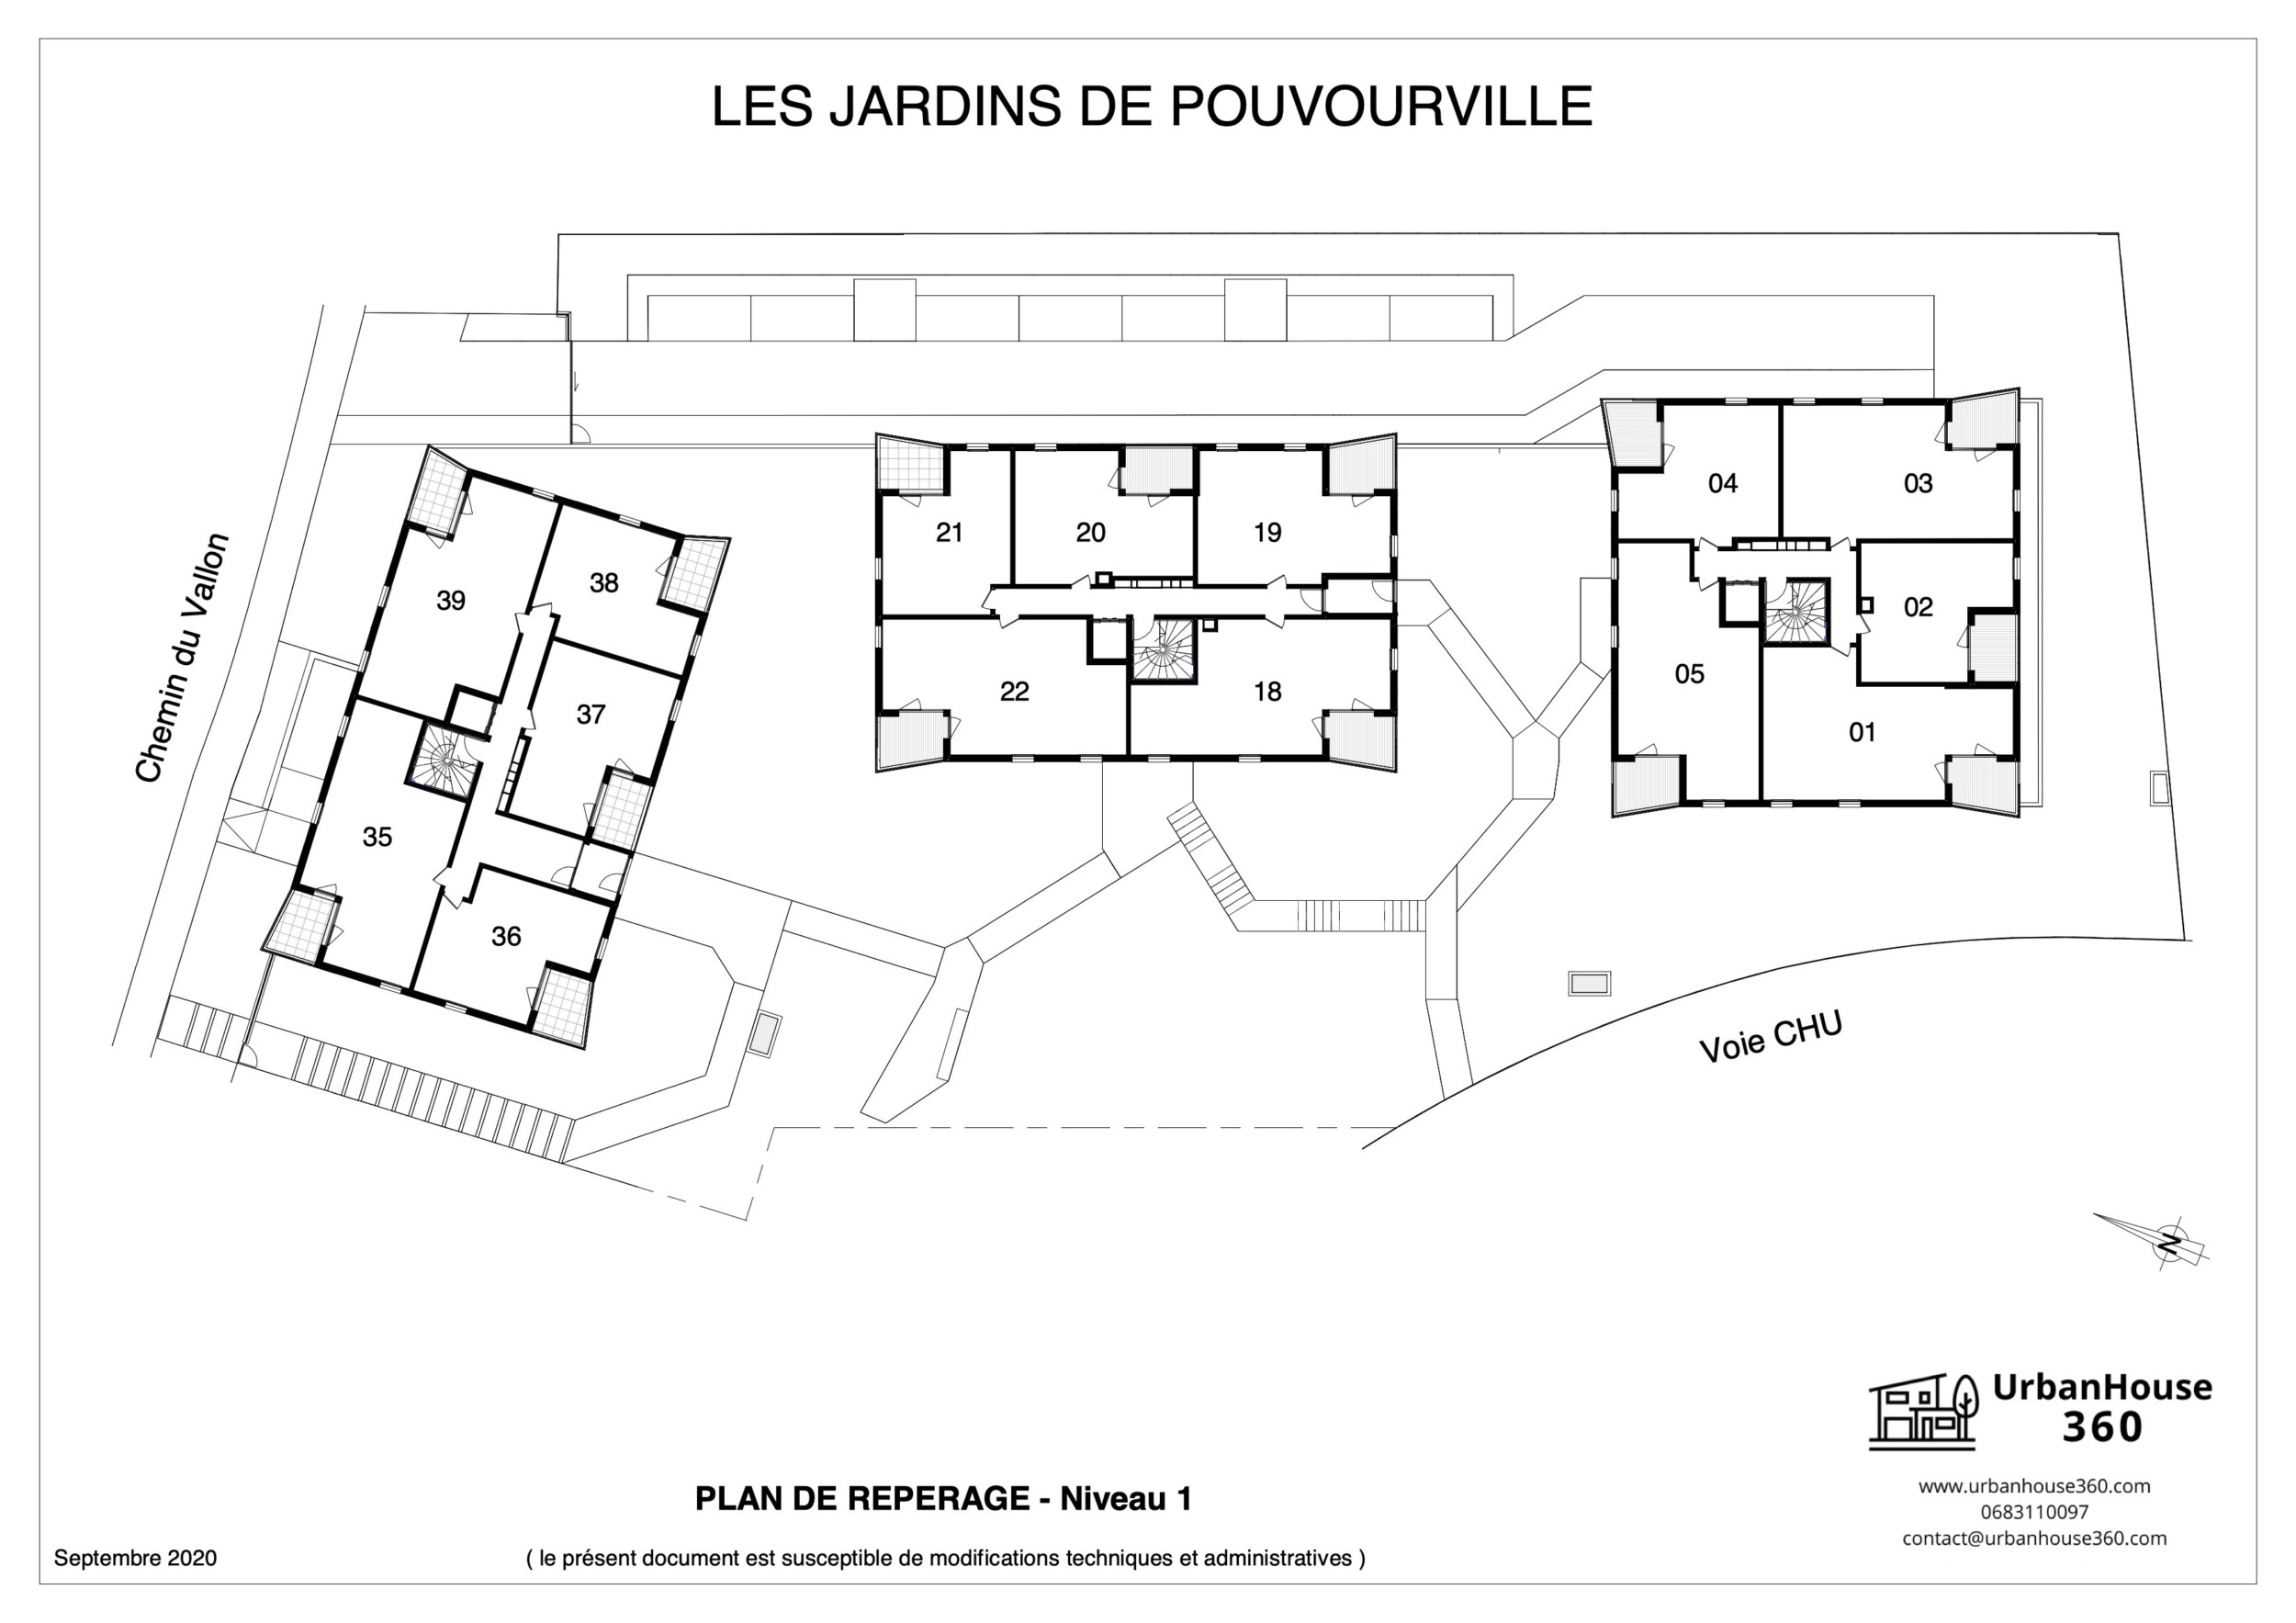 UrbanHouse360-plans_de_reperage-les_jardins_de_pouvourville 2